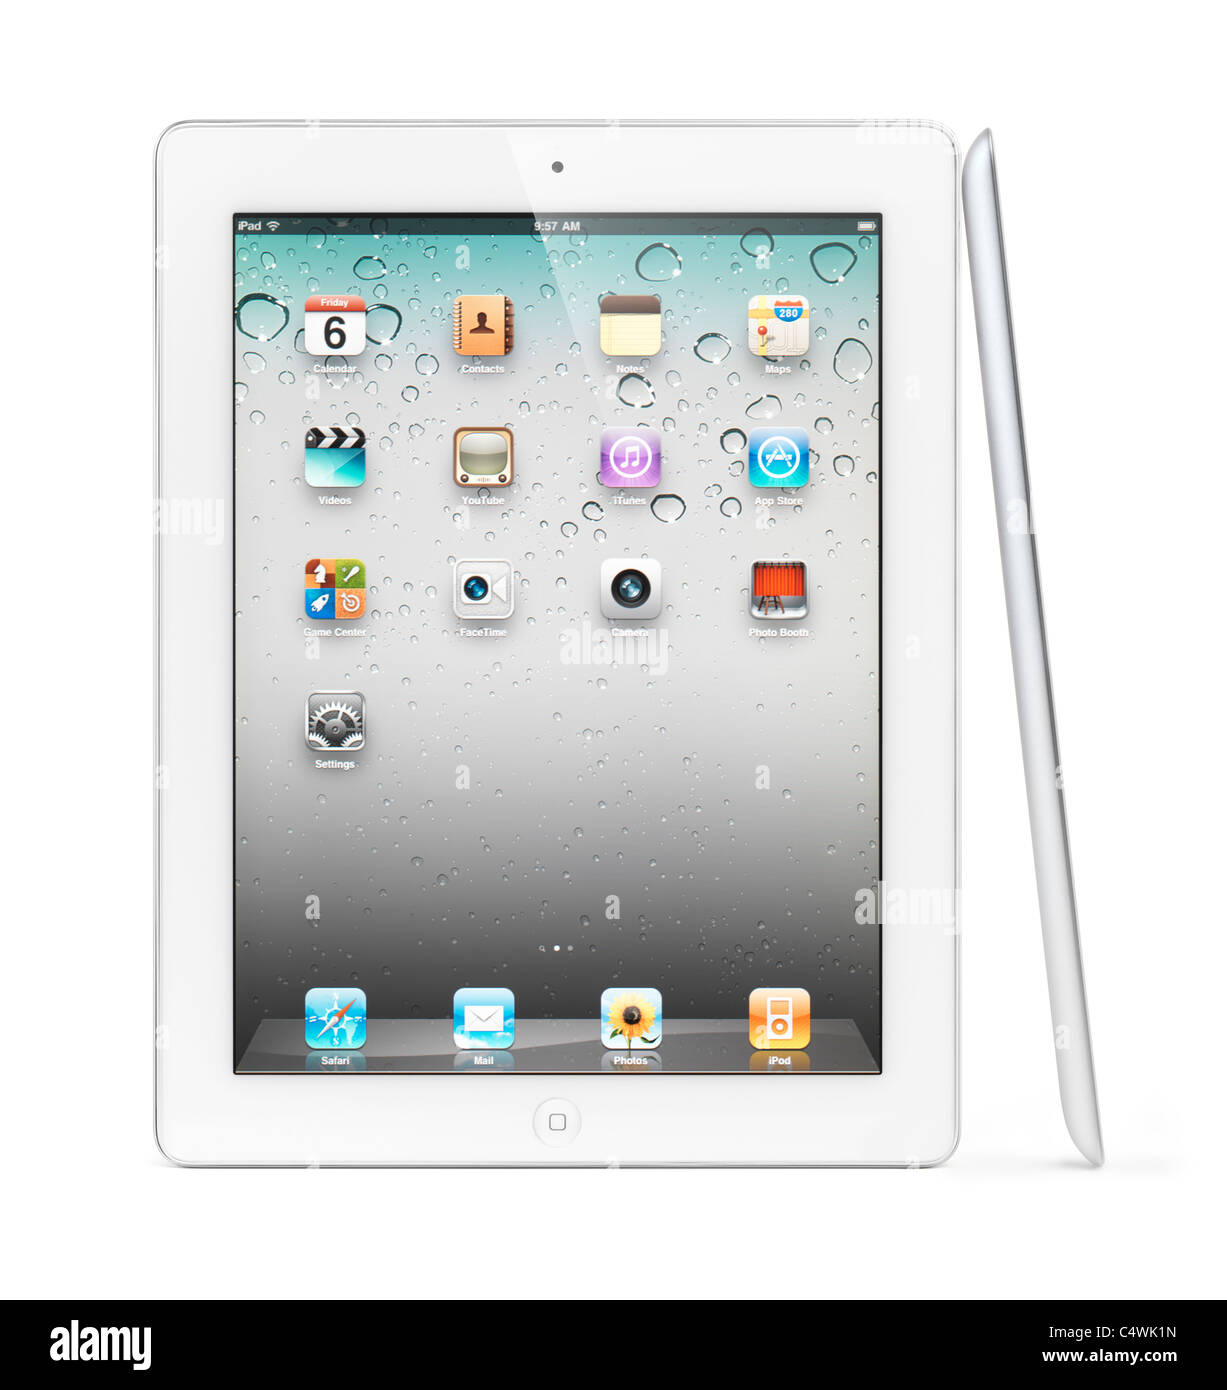 Tablettes Apple iPad